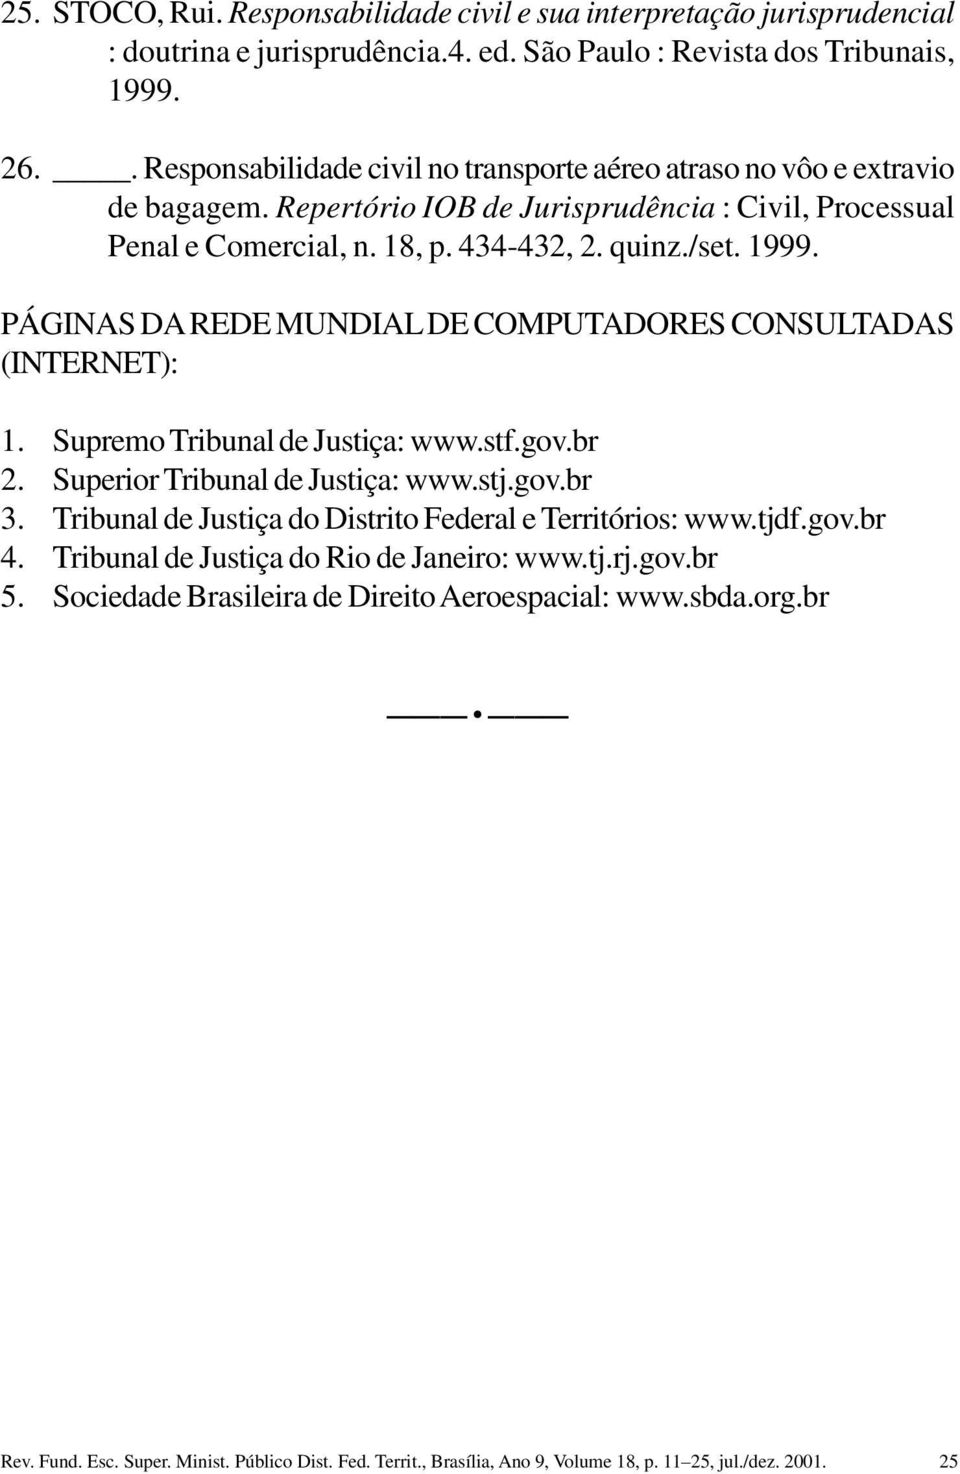 PÁGINAS DA REDE MUNDIAL DE COMPUTADORES CONSULTADAS (INTERNET): 1. Supremo Tribunal de Justiça: www.stf.gov.br 2. Superior Tribunal de Justiça: www.stj.gov.br 3.